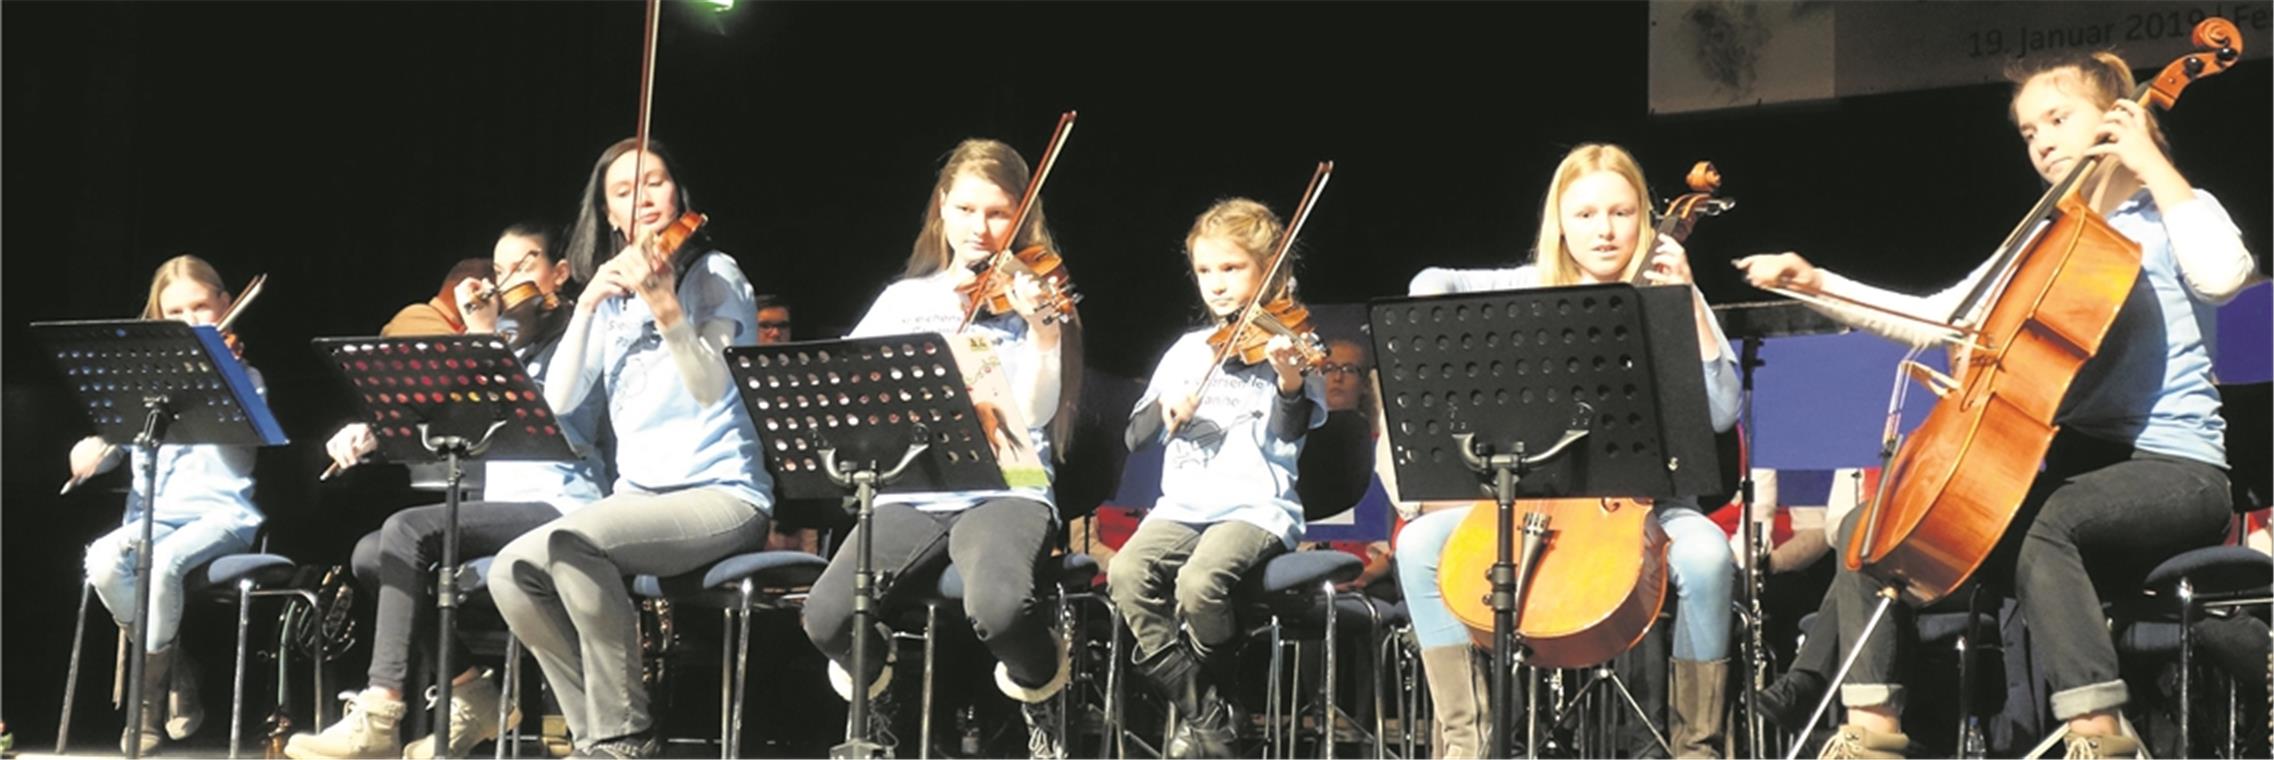 Paganinos ist der Name des Streicher-Nachwuchsensembles unter dem Dach der Musikschule. Beim Sommerfest treten die Schüler mit dem Kammerorchester auf. Fotos: Musikschule